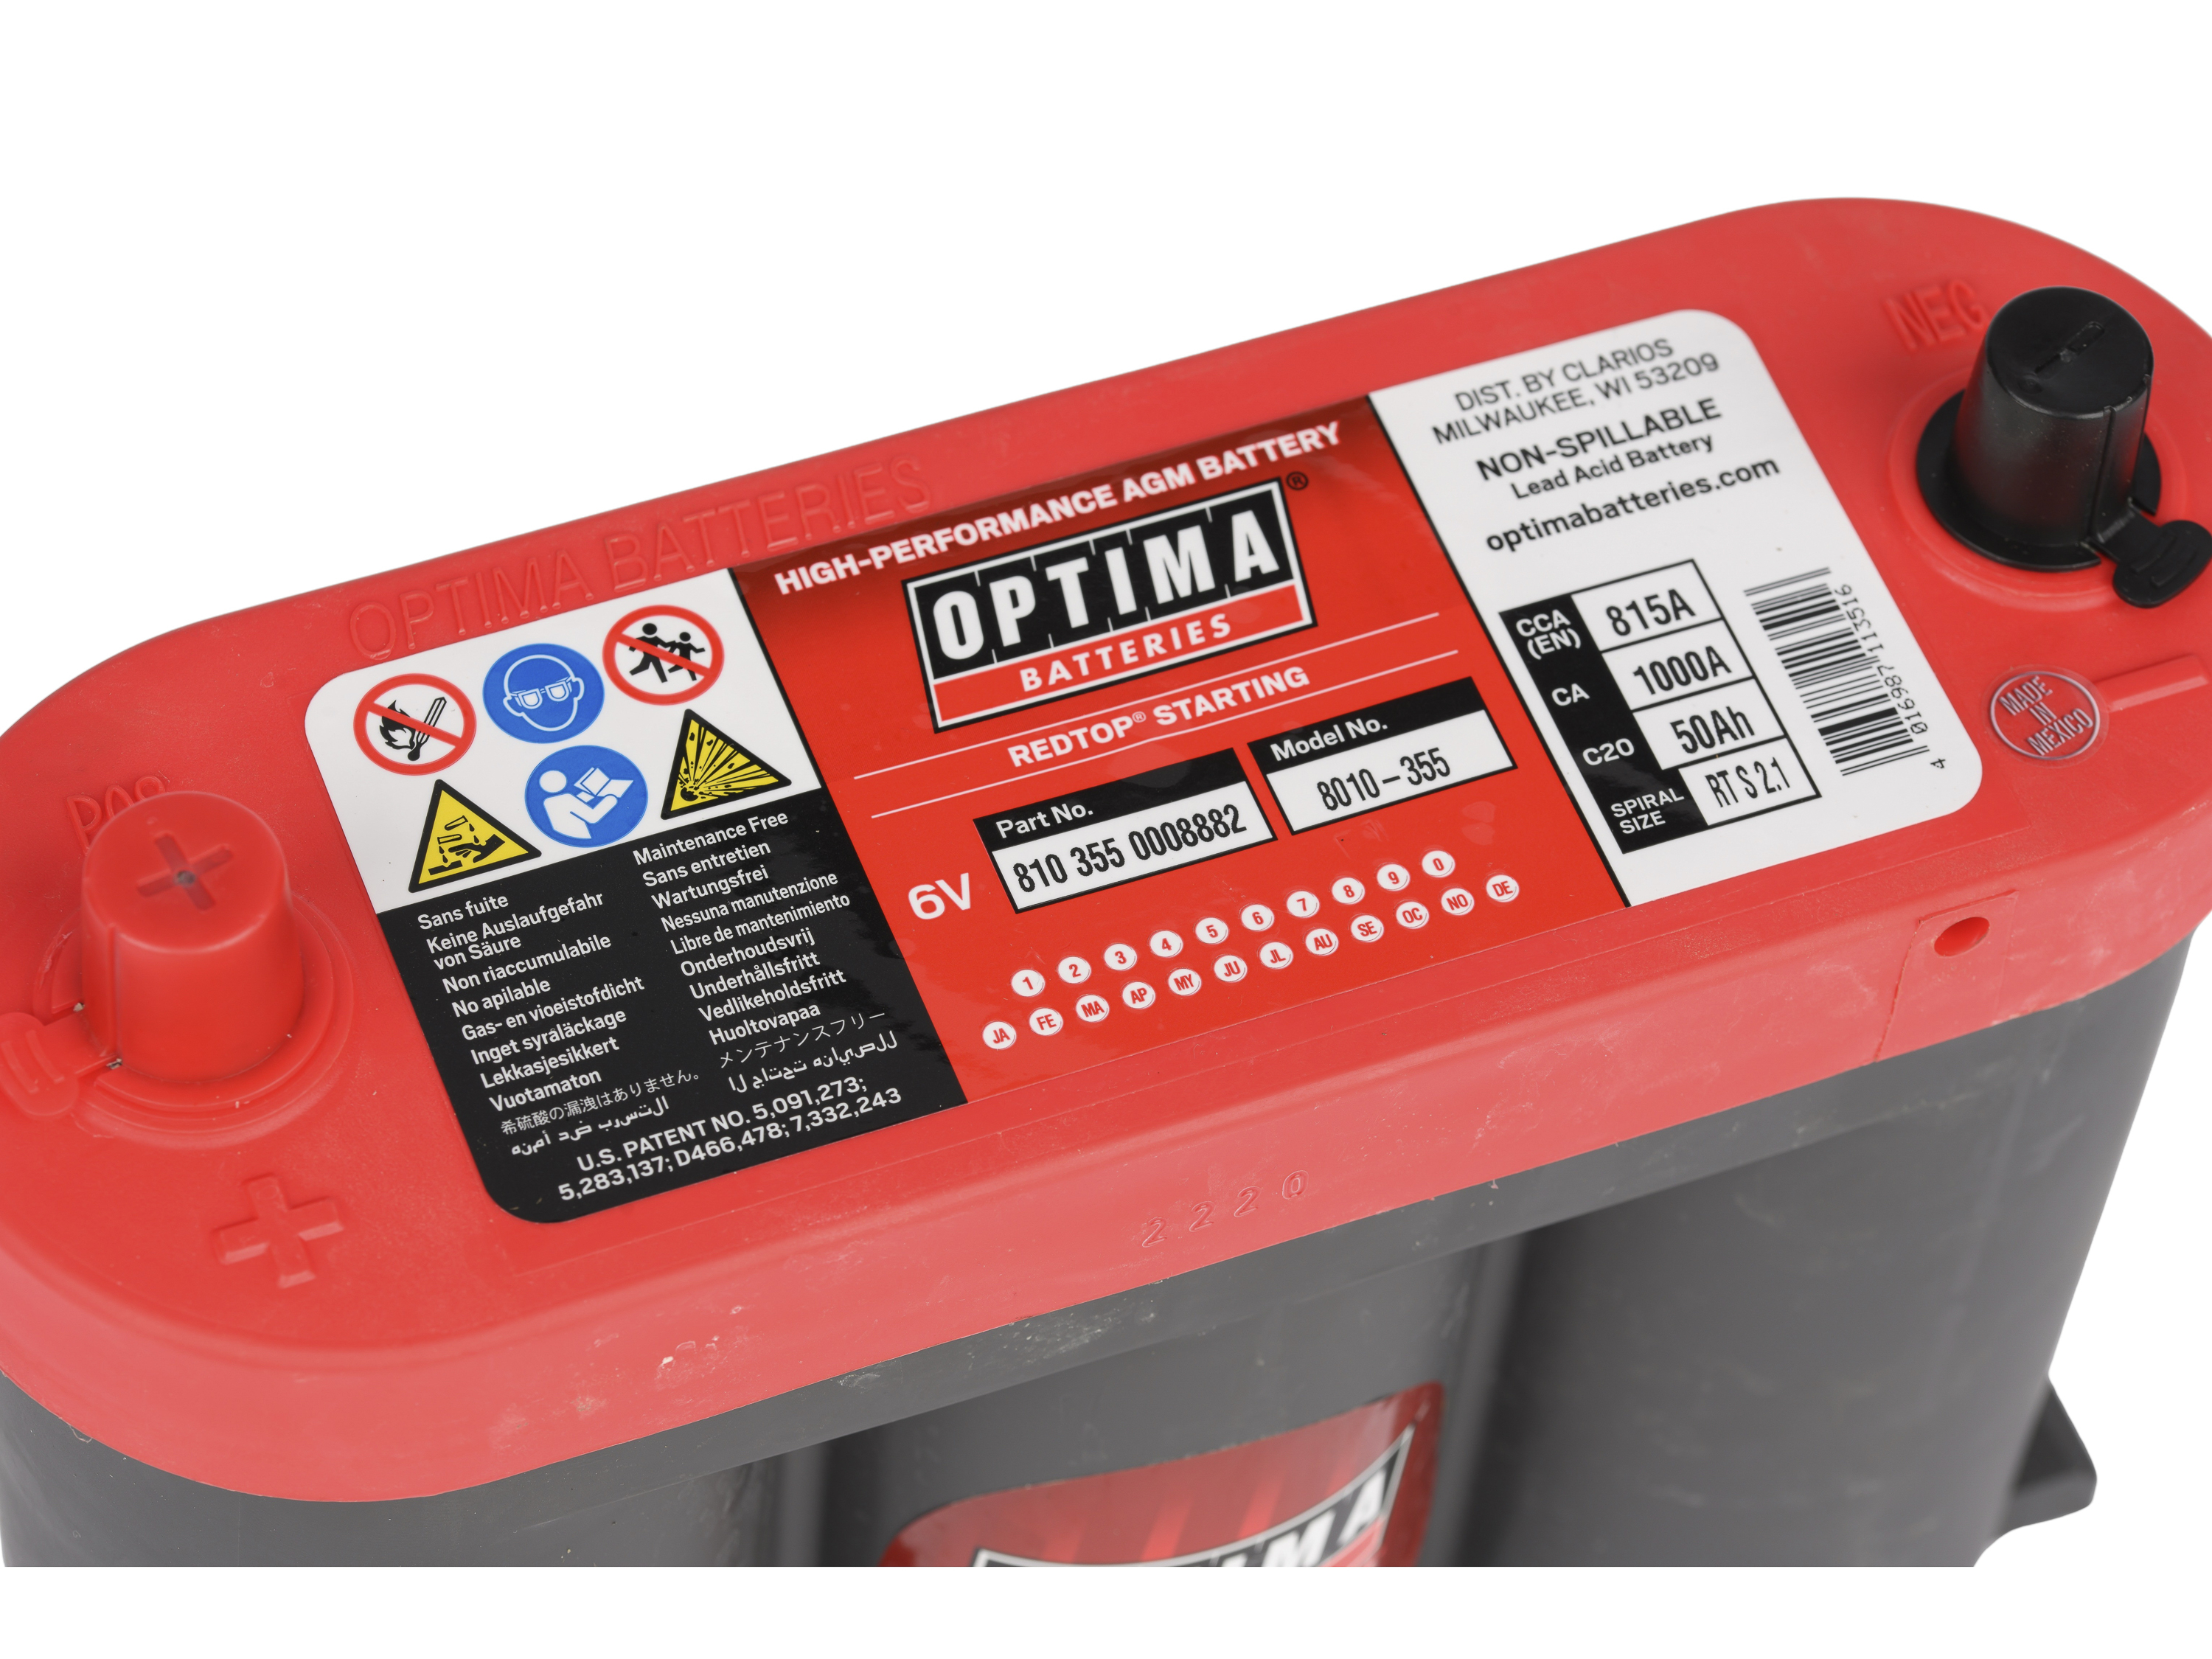 Optima Red Top S-2.1 (6V) 50Ah 815CCA Bateria - 810355000